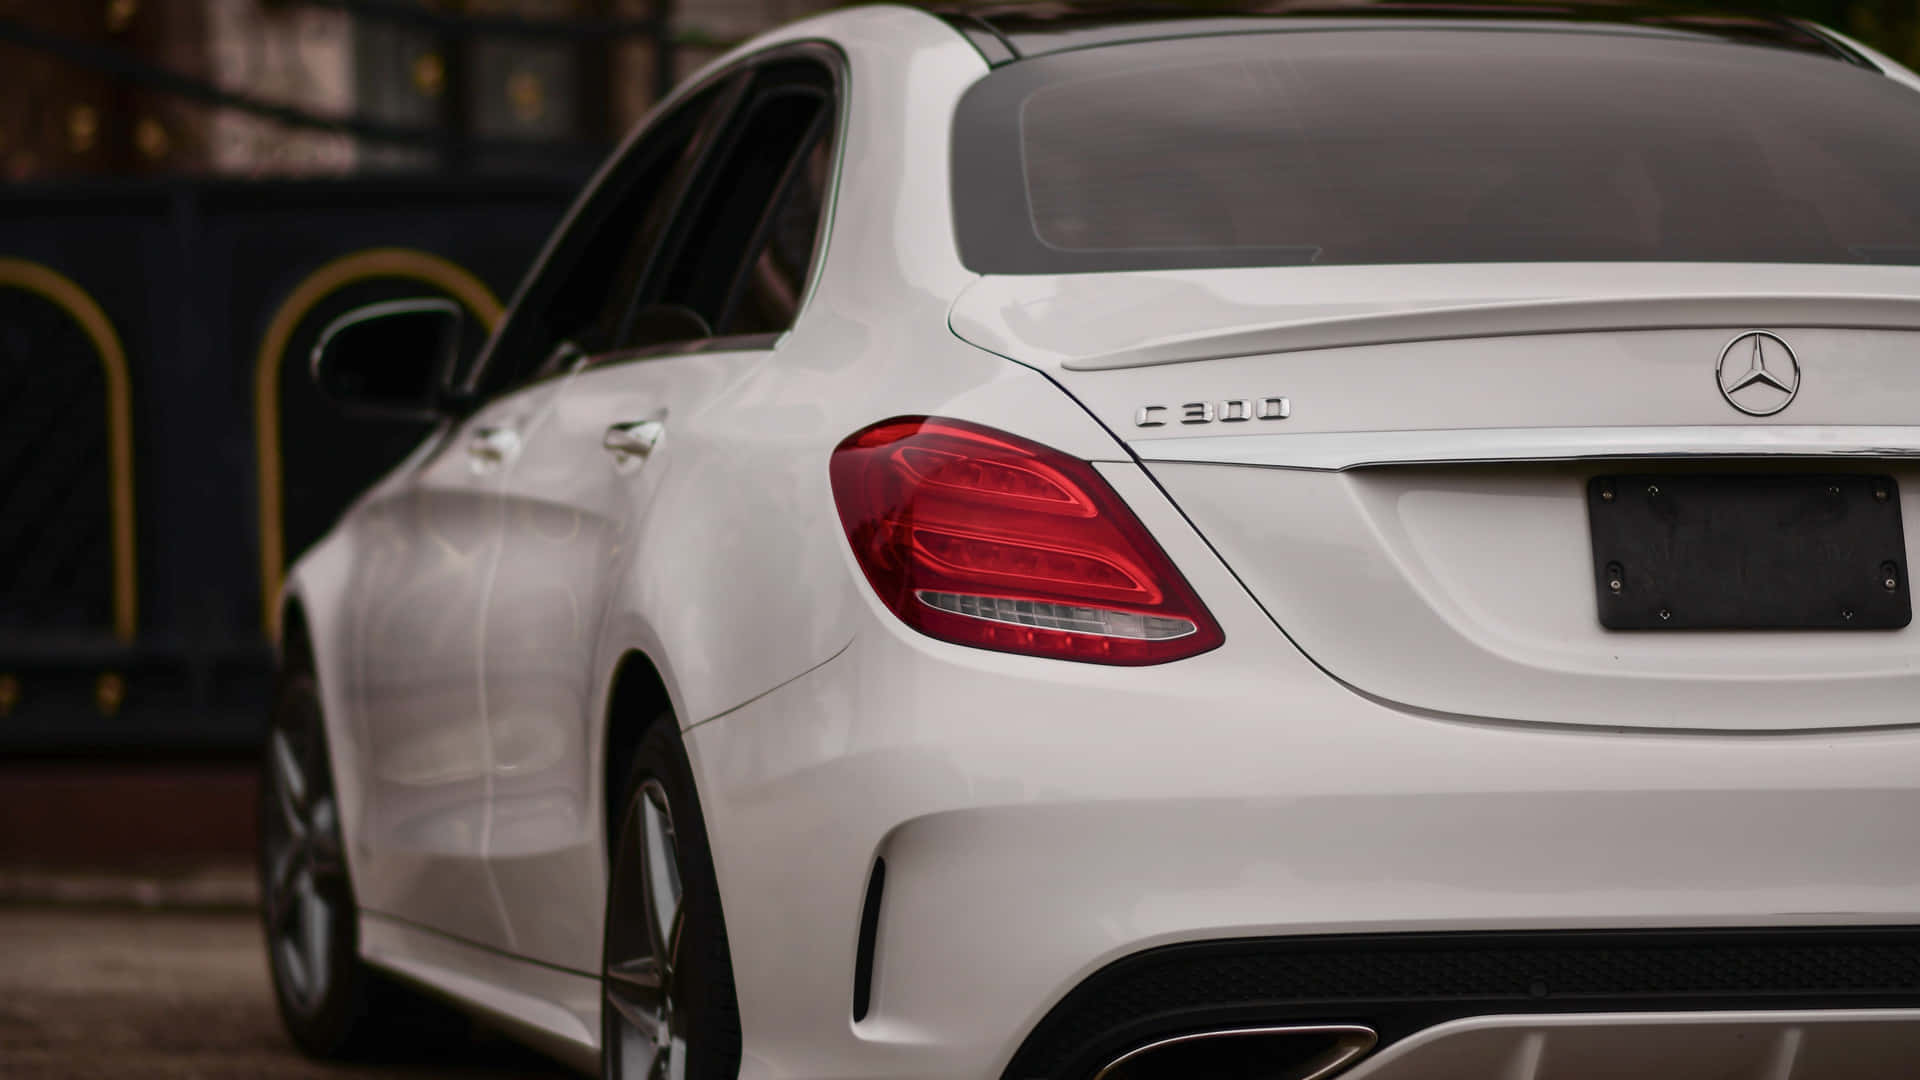 Stunning Mercedes Benz in 4K Resolution